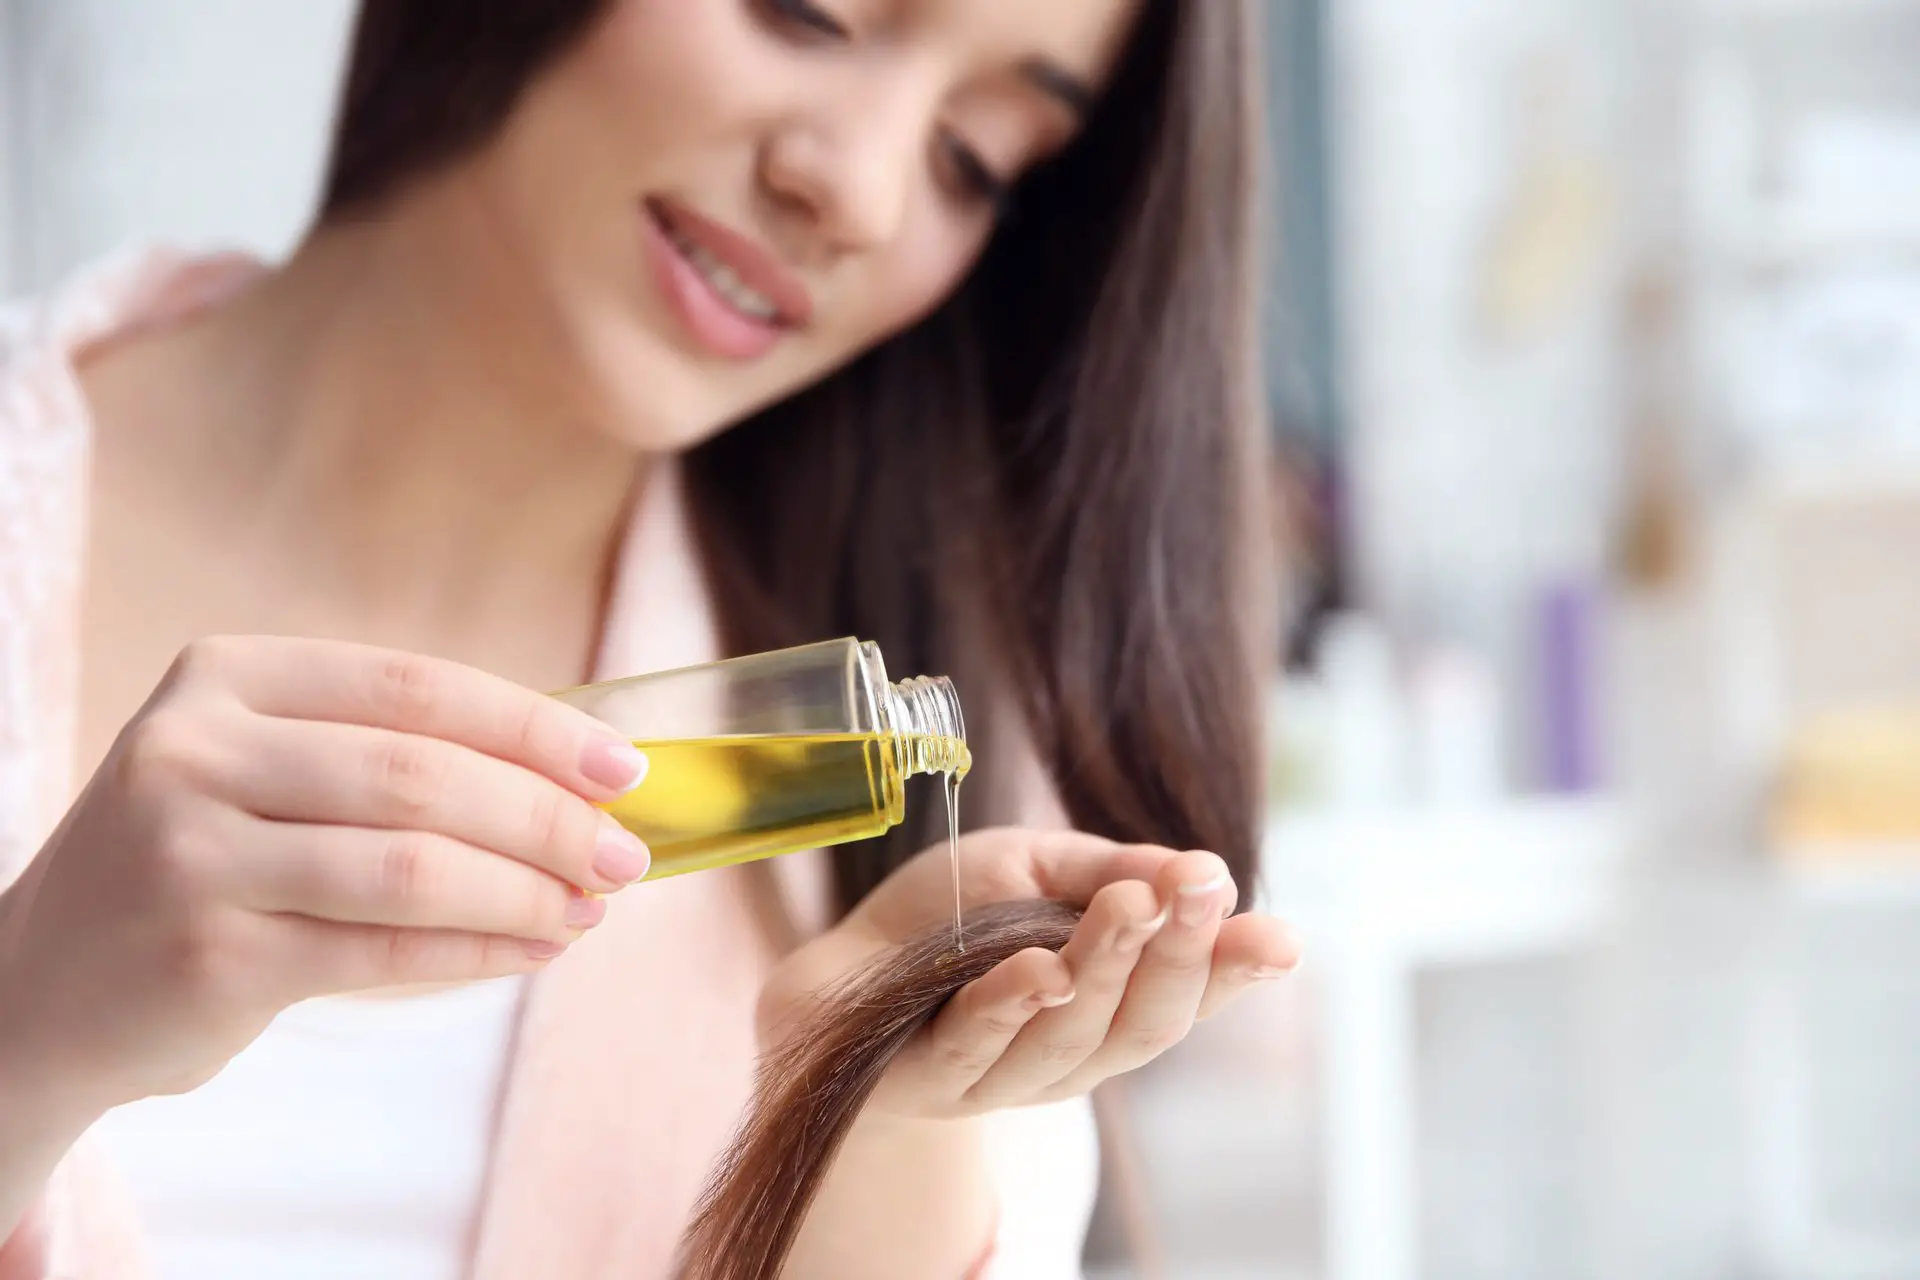 aceite de oliva para el cabello